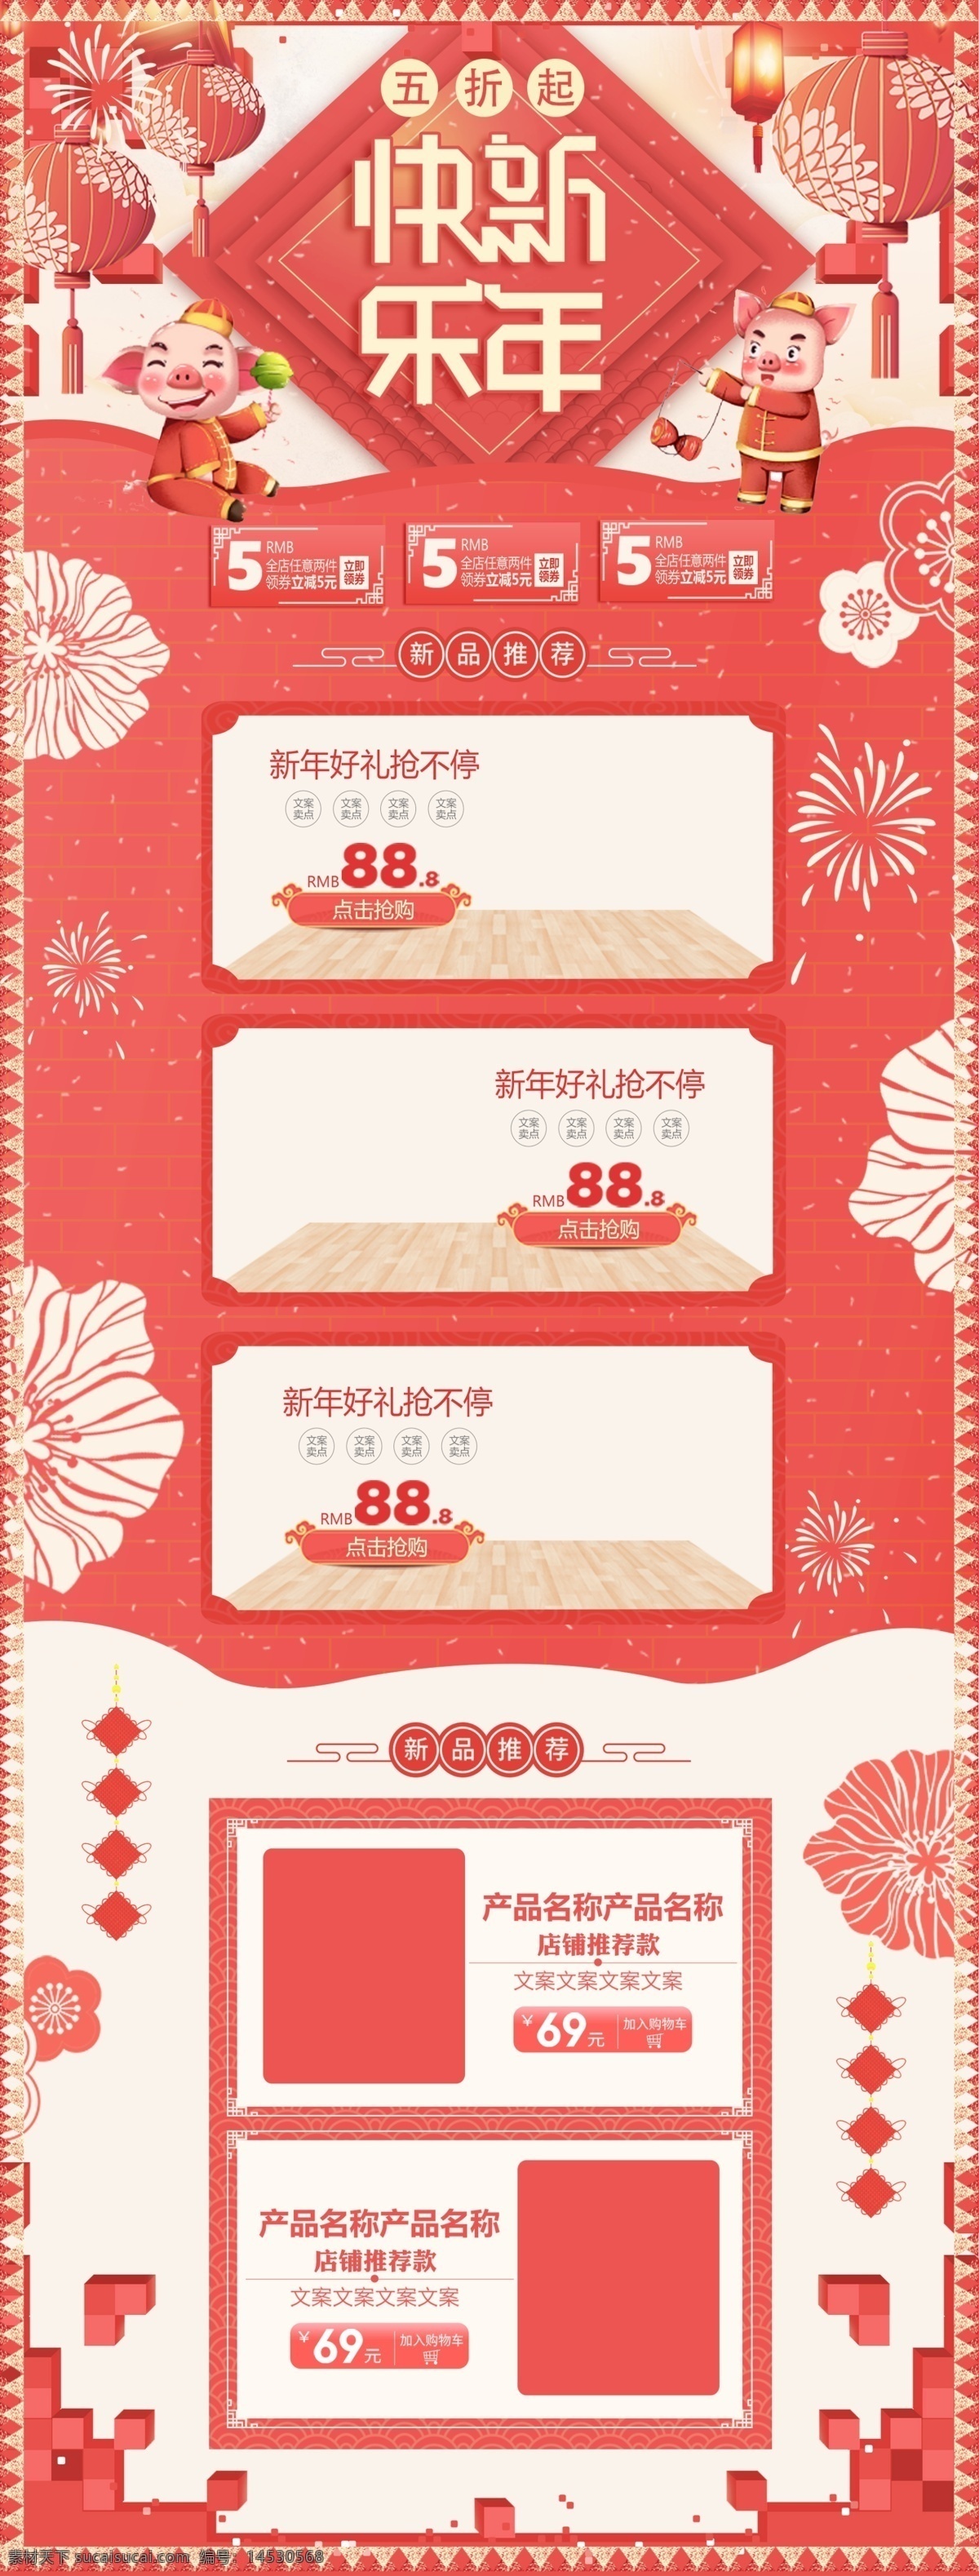 橘红 2019 猪年 新春 新年 春节 促销 电商 首页 中国风 年货节 新年快乐 淘宝